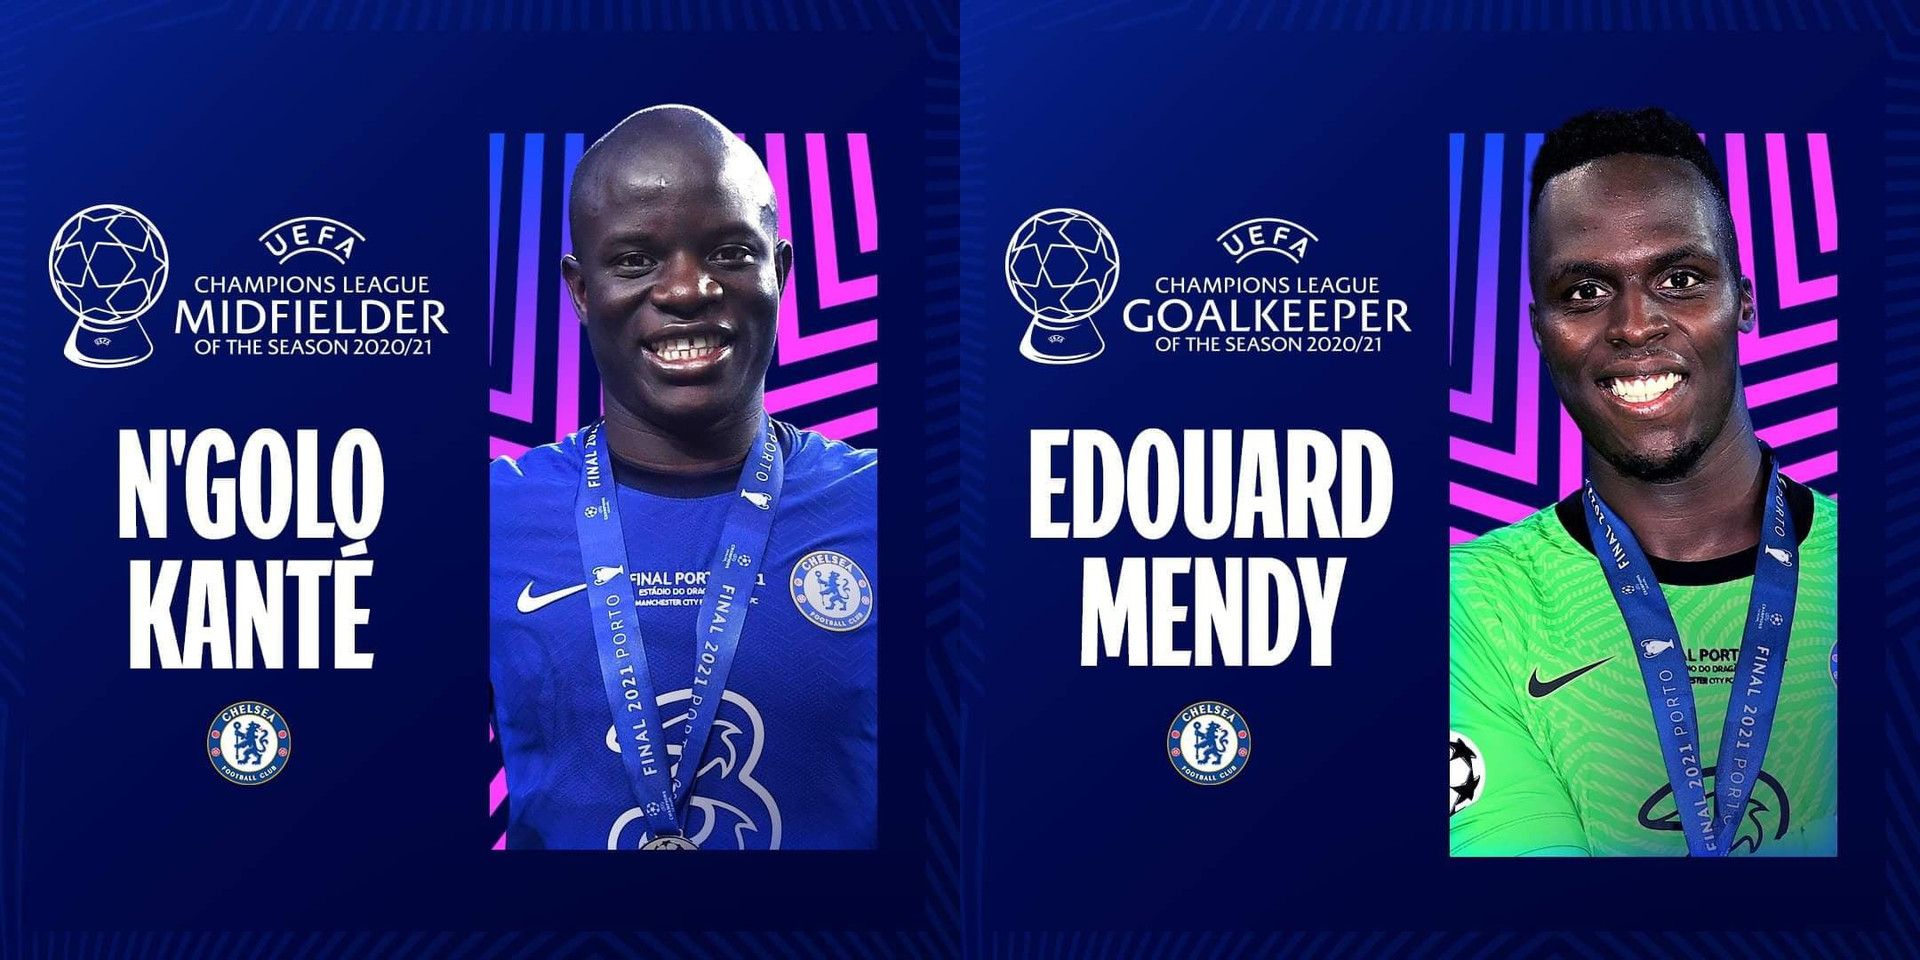 2 cầu thủ khác của Chelsea là Kante và thủ thành Edouard Mendy cũng được vinh danh.